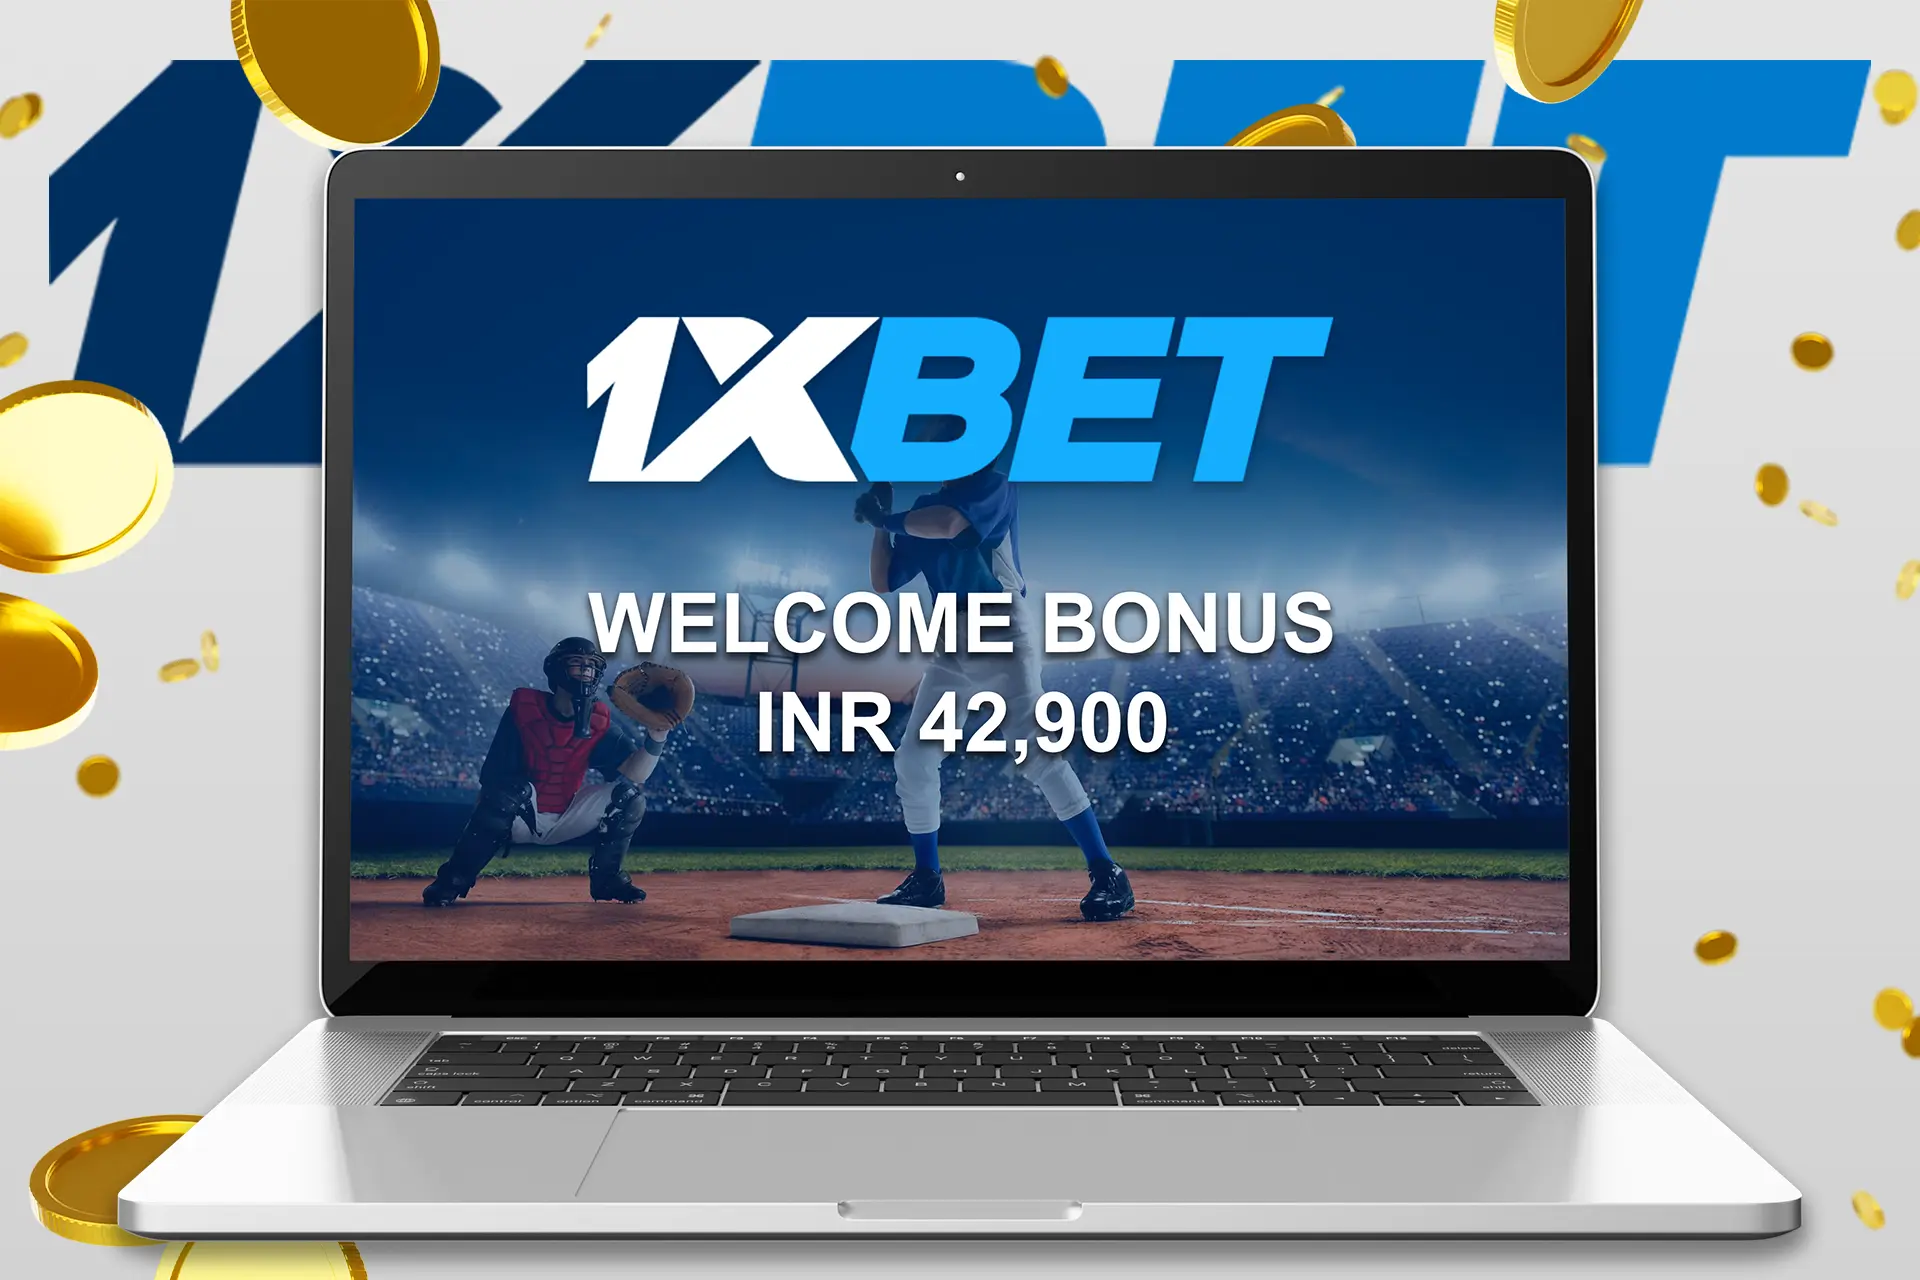 Get an INR 42,900 baseball betting bonus from 1xBet.